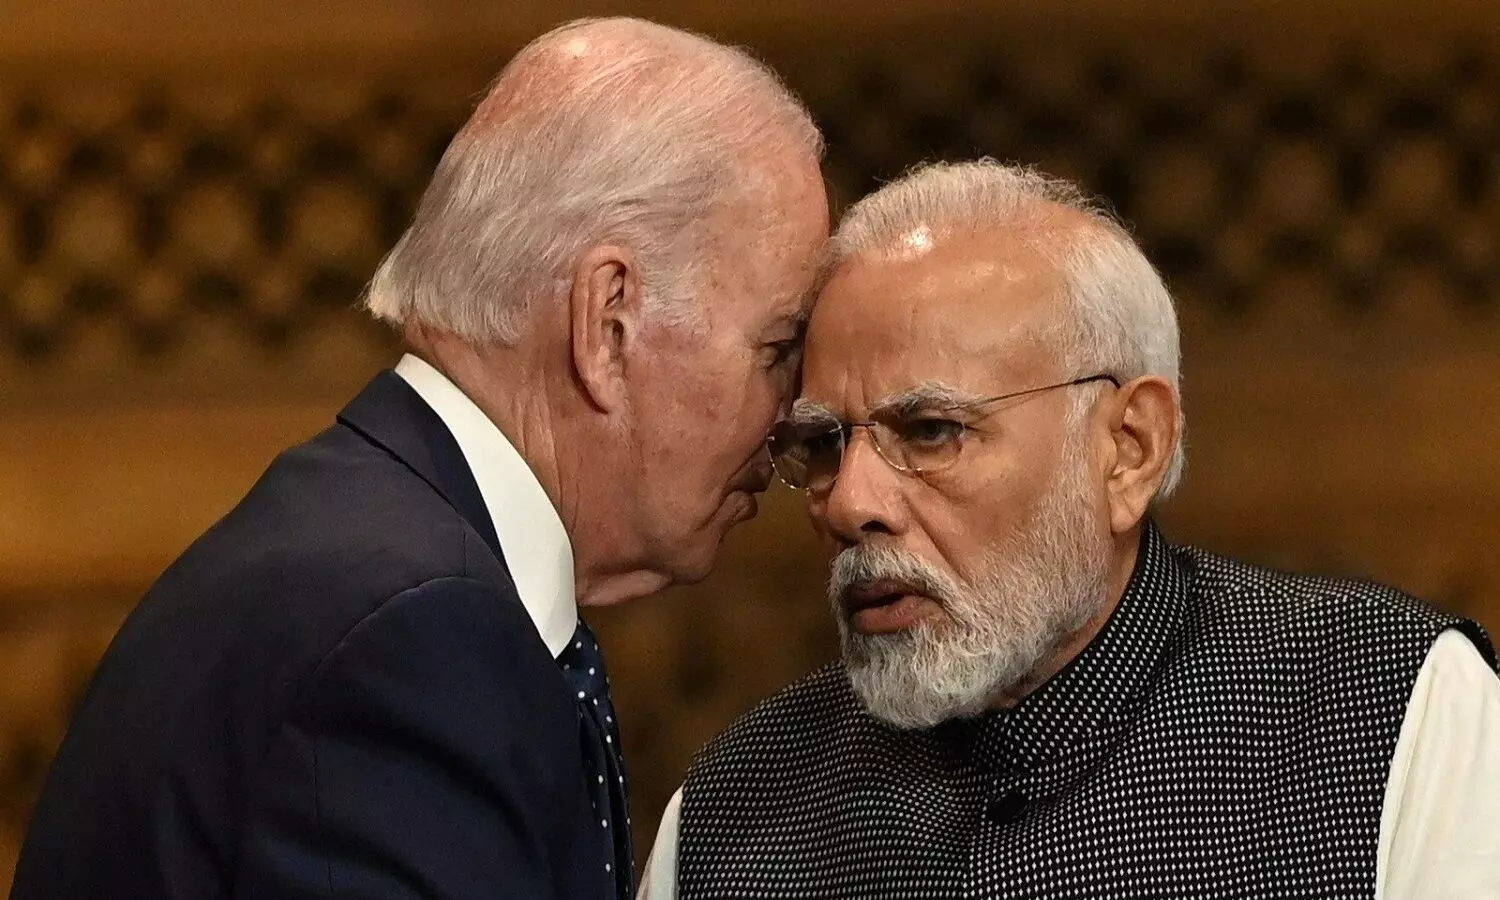 PM Modi US Tour: पीएम मोदी का अमेरिकी दौरा भारत के लिए क्या मायने रखता है?